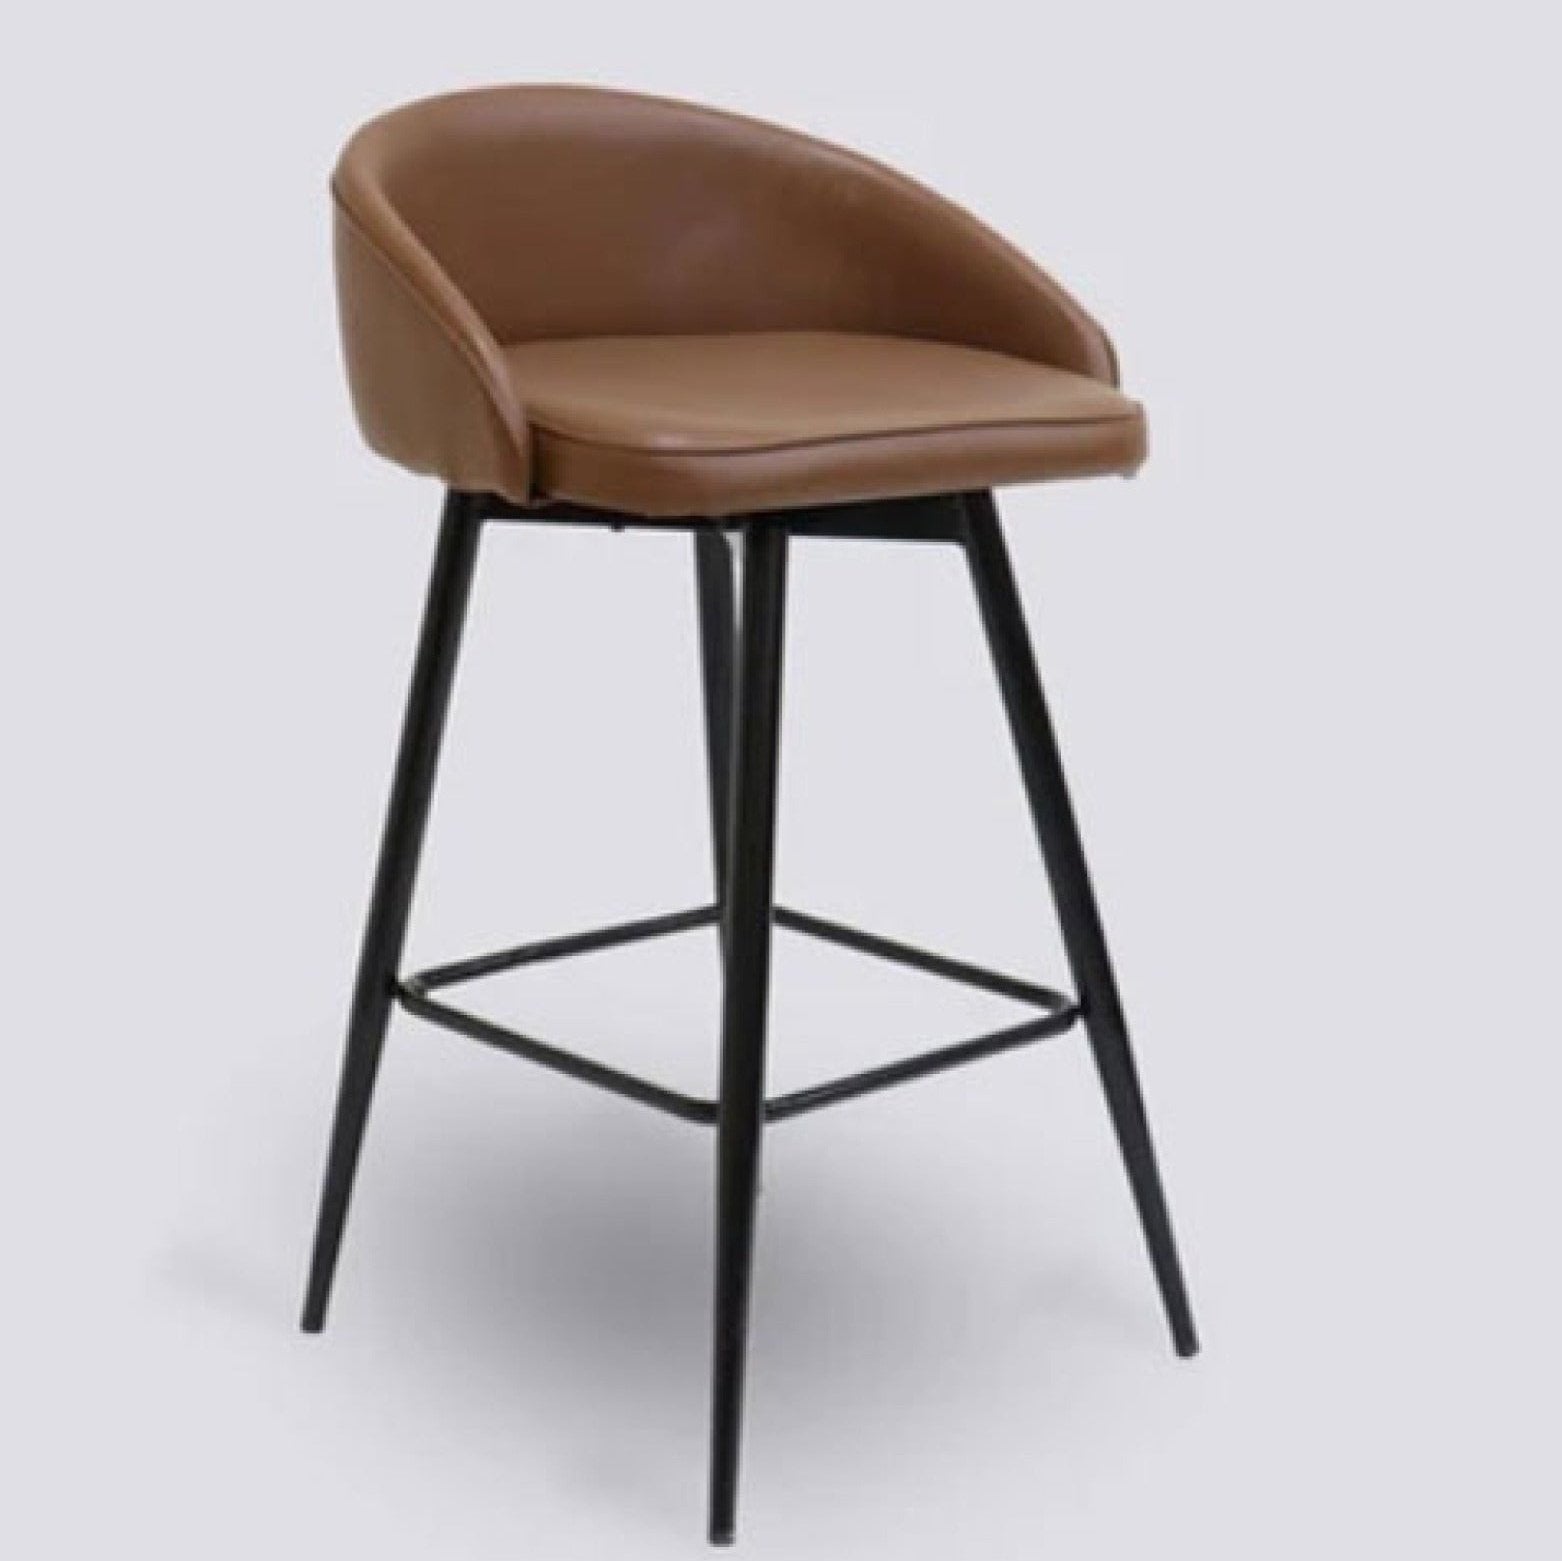 LUX-632 BAR STOOL Mobel Furniture